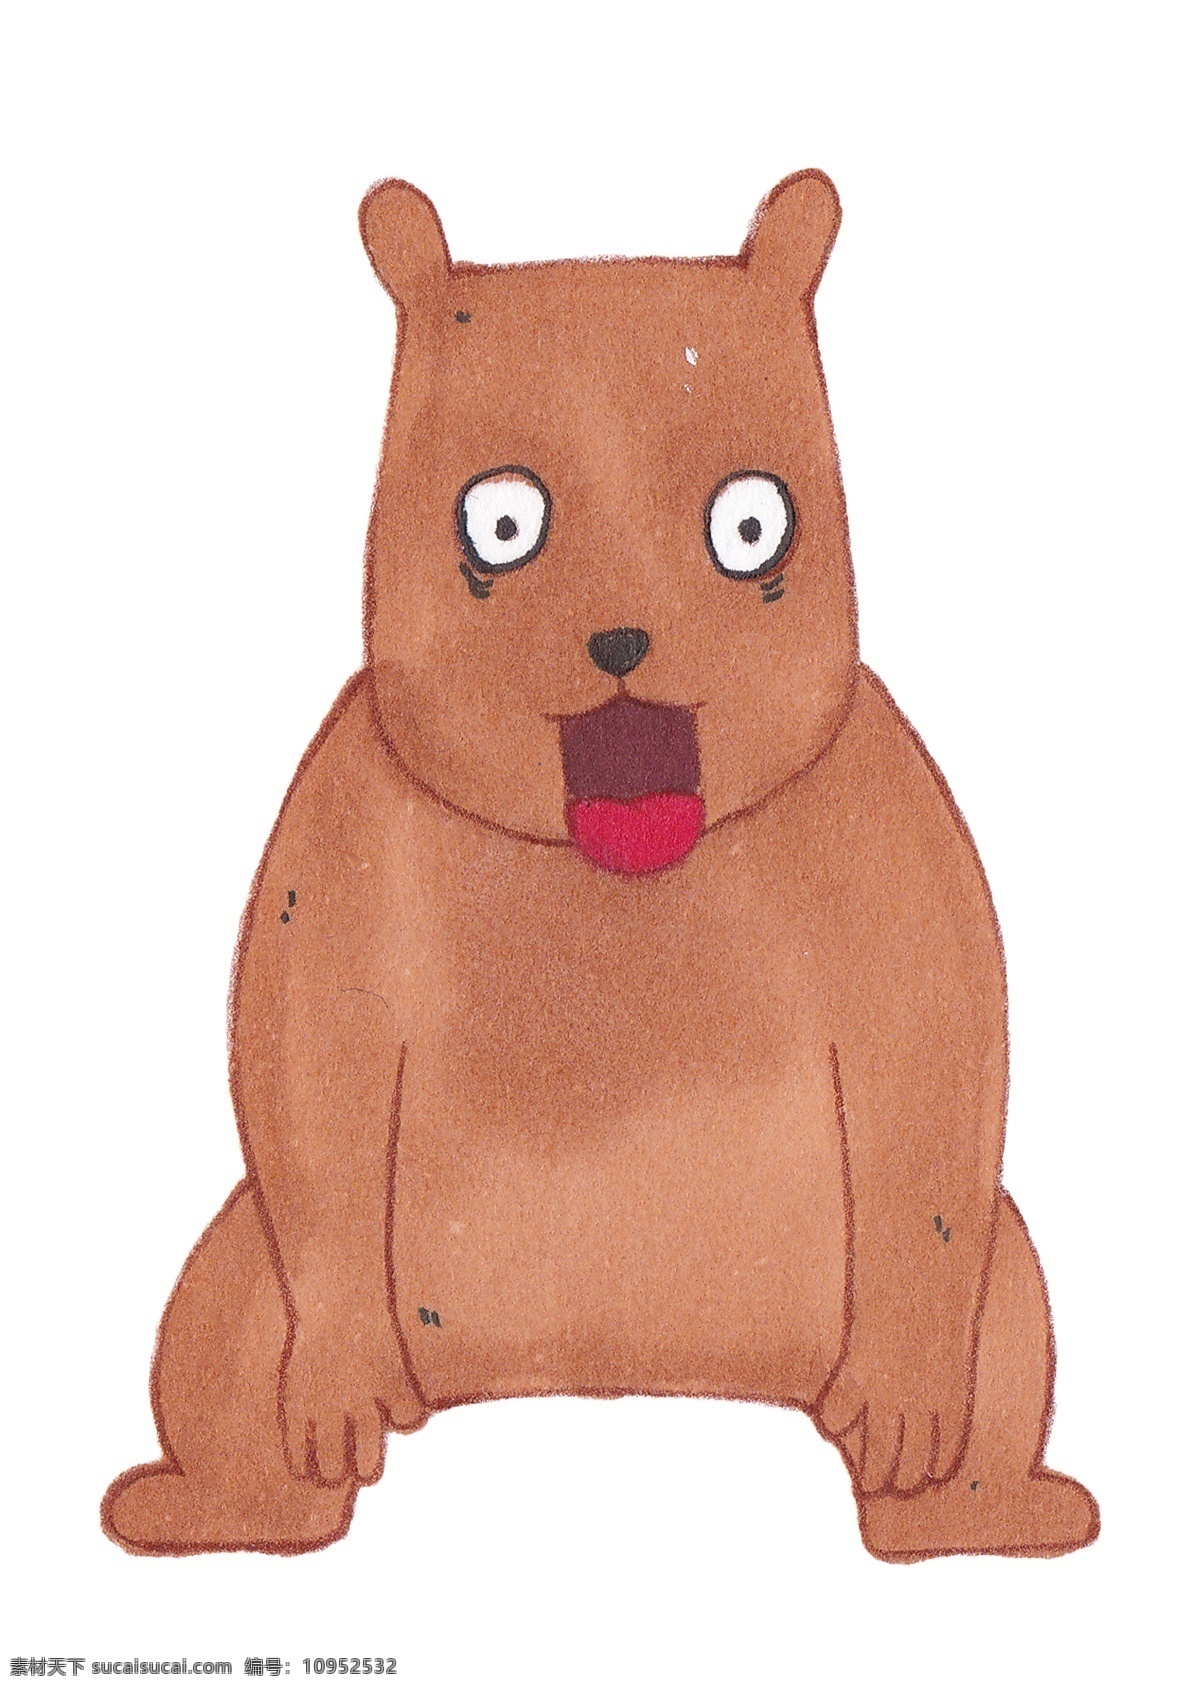 卡通 手绘 买 熊 插画 灰熊 狗熊 棕熊 哺乳动物 身体肥大 能爬树 食肉 圆滚滚 卡通手绘 动物插画